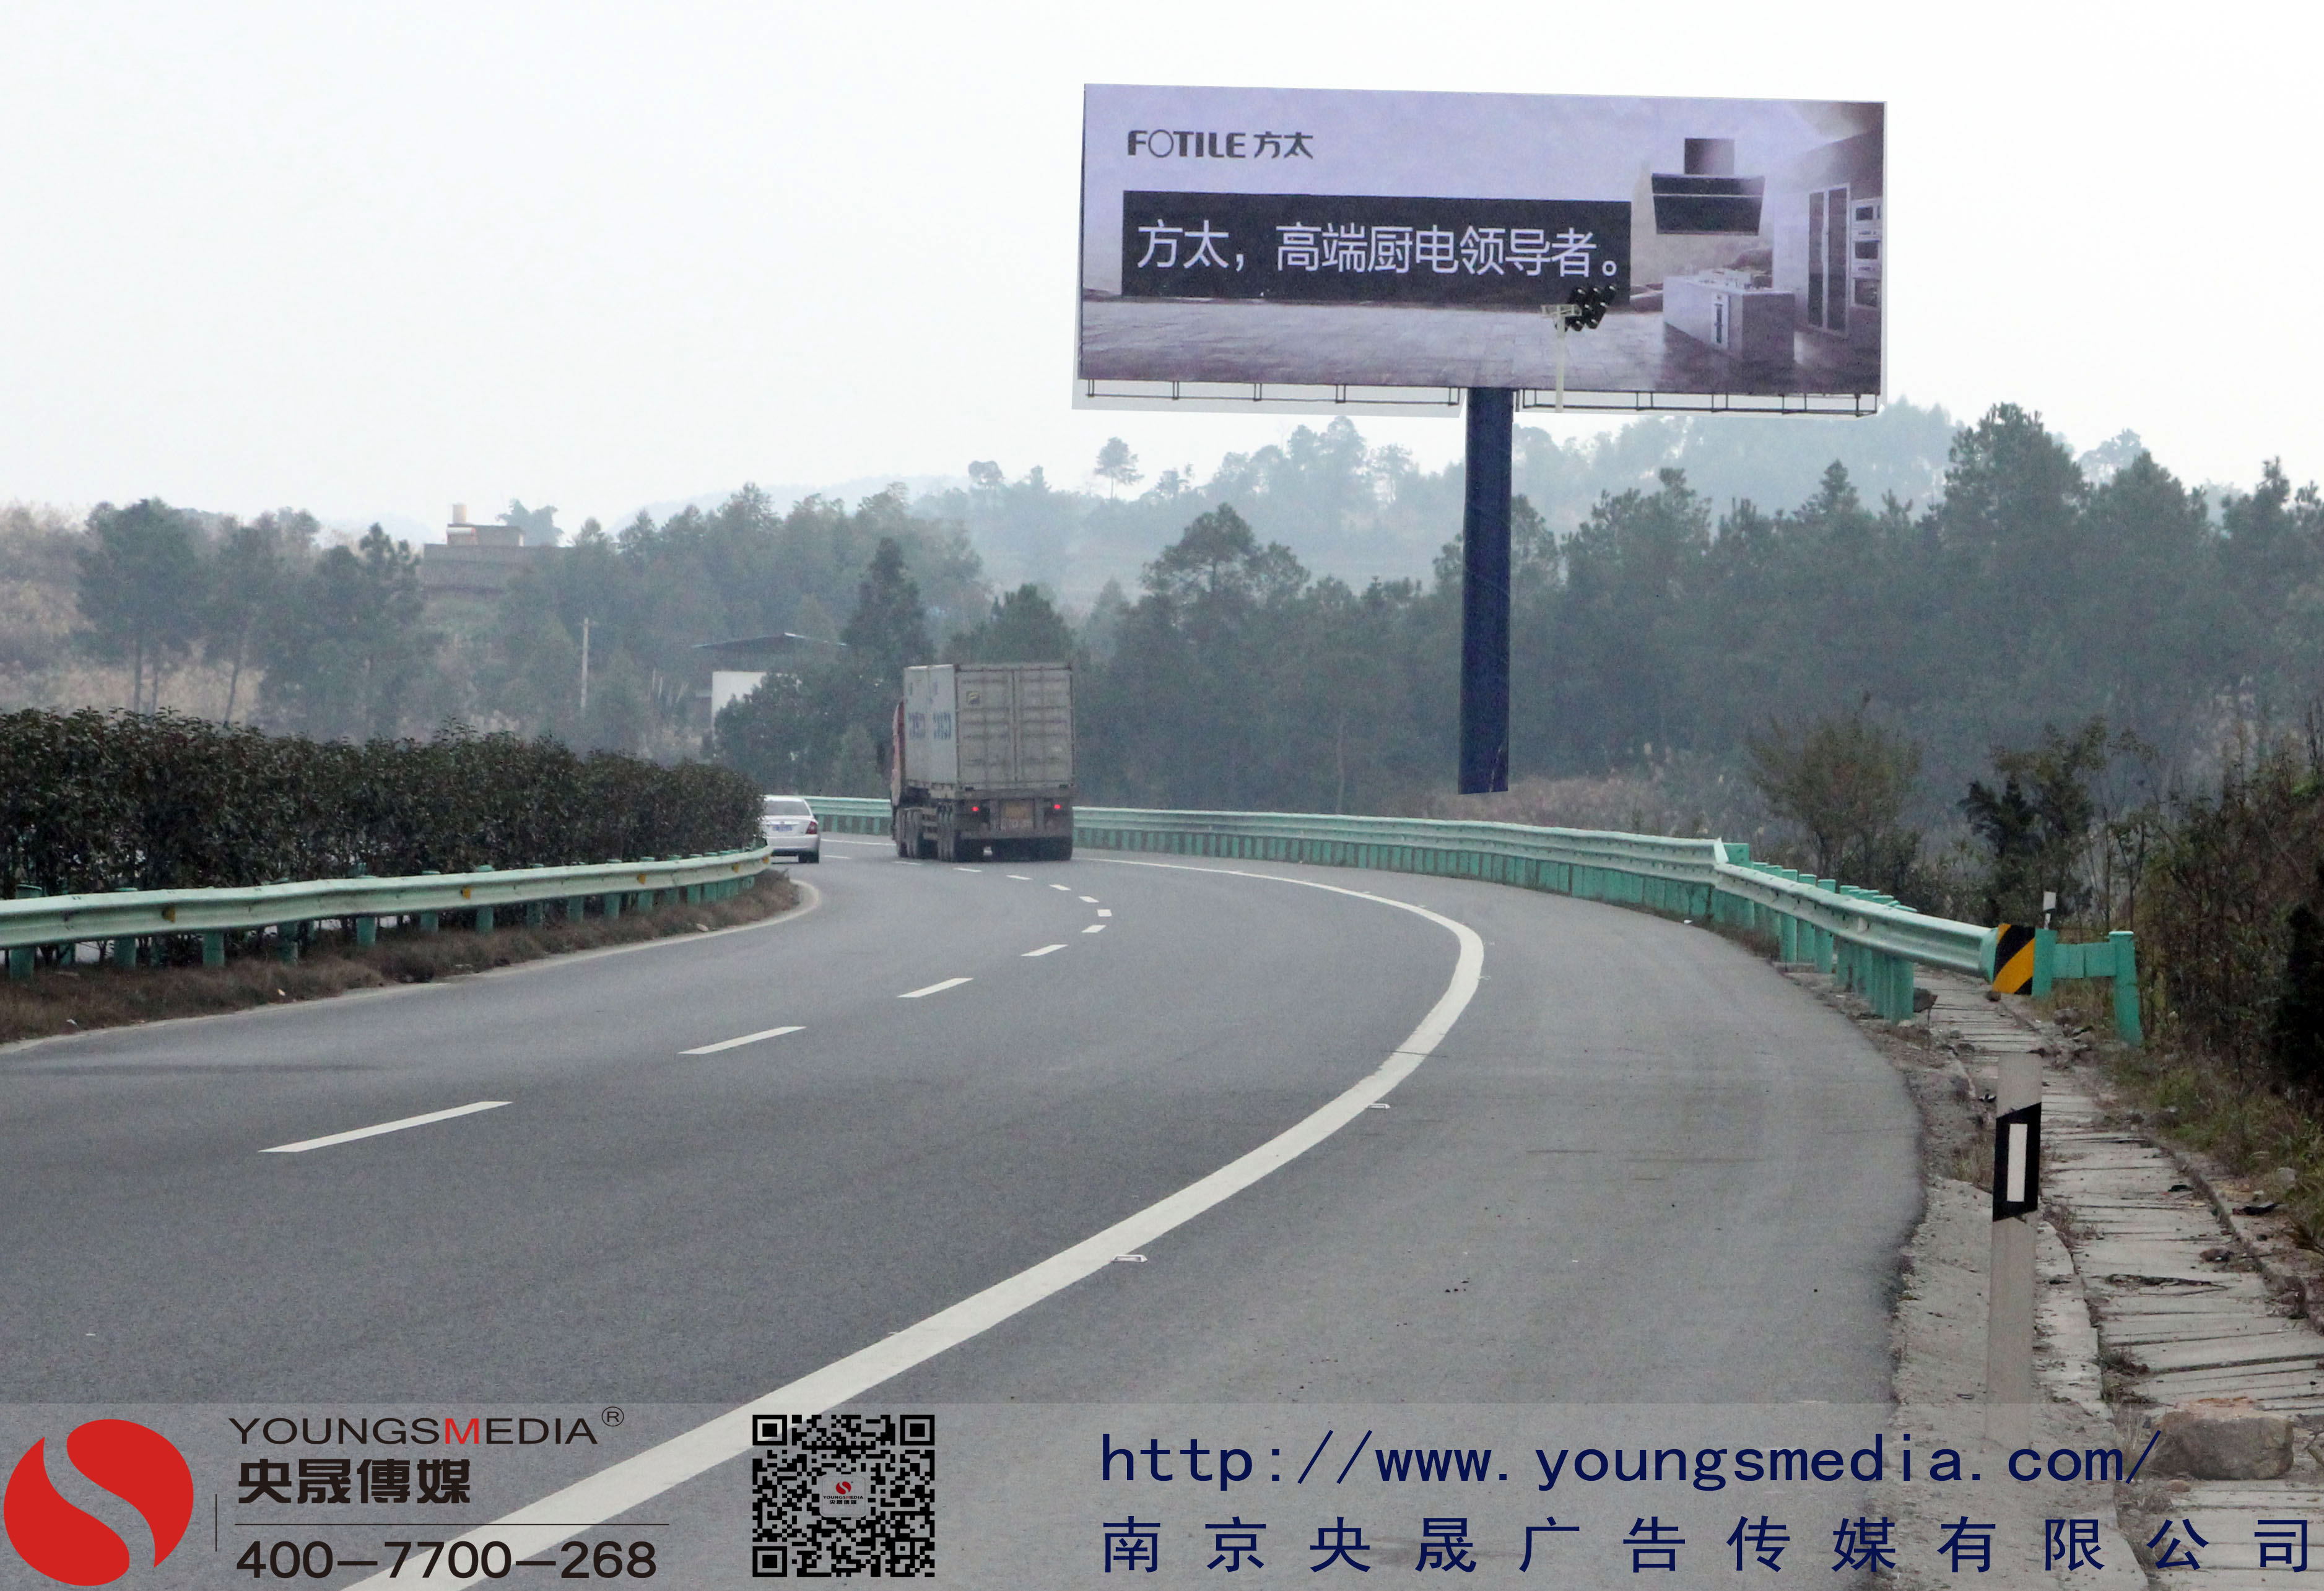 潮惠高速公路广告投放